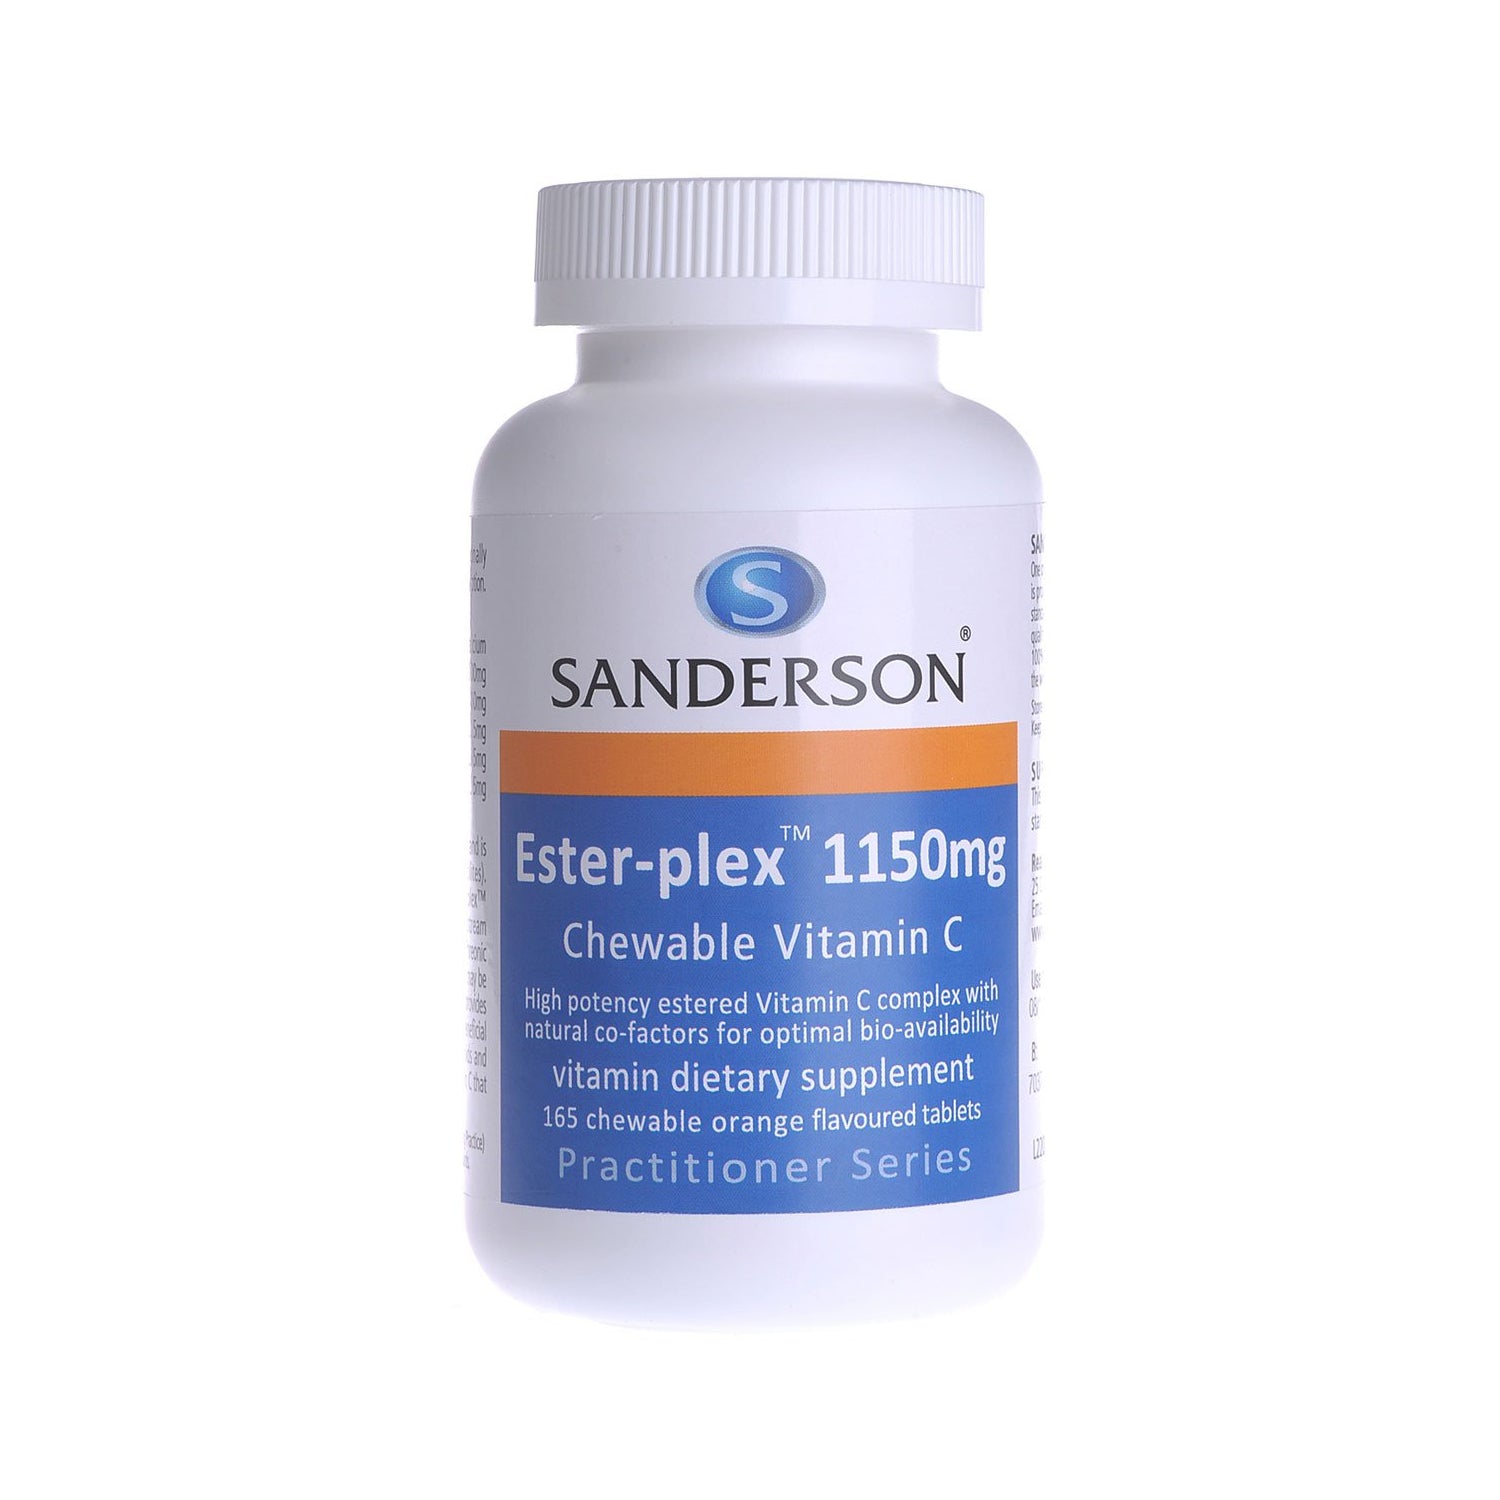 Sanderson Ester-plex 1150mg Chewable Vitamin C